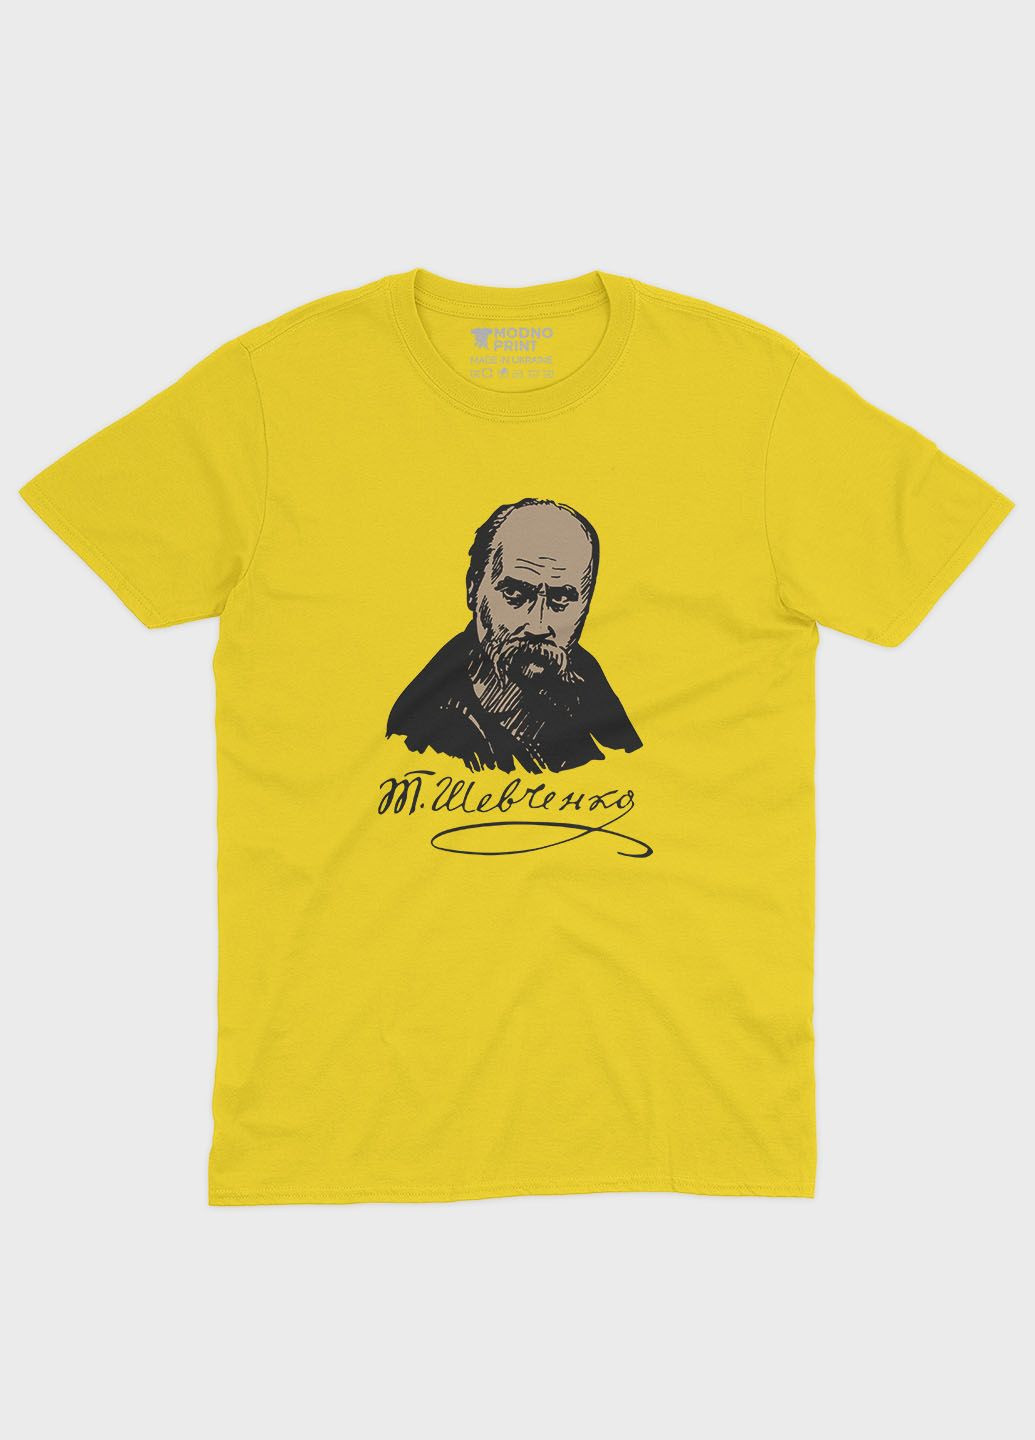 Желтая демисезонная футболка для мальчика с патриотическим принтом тарас шевченко (ts001-2-sun-005-1-054-b) Modno